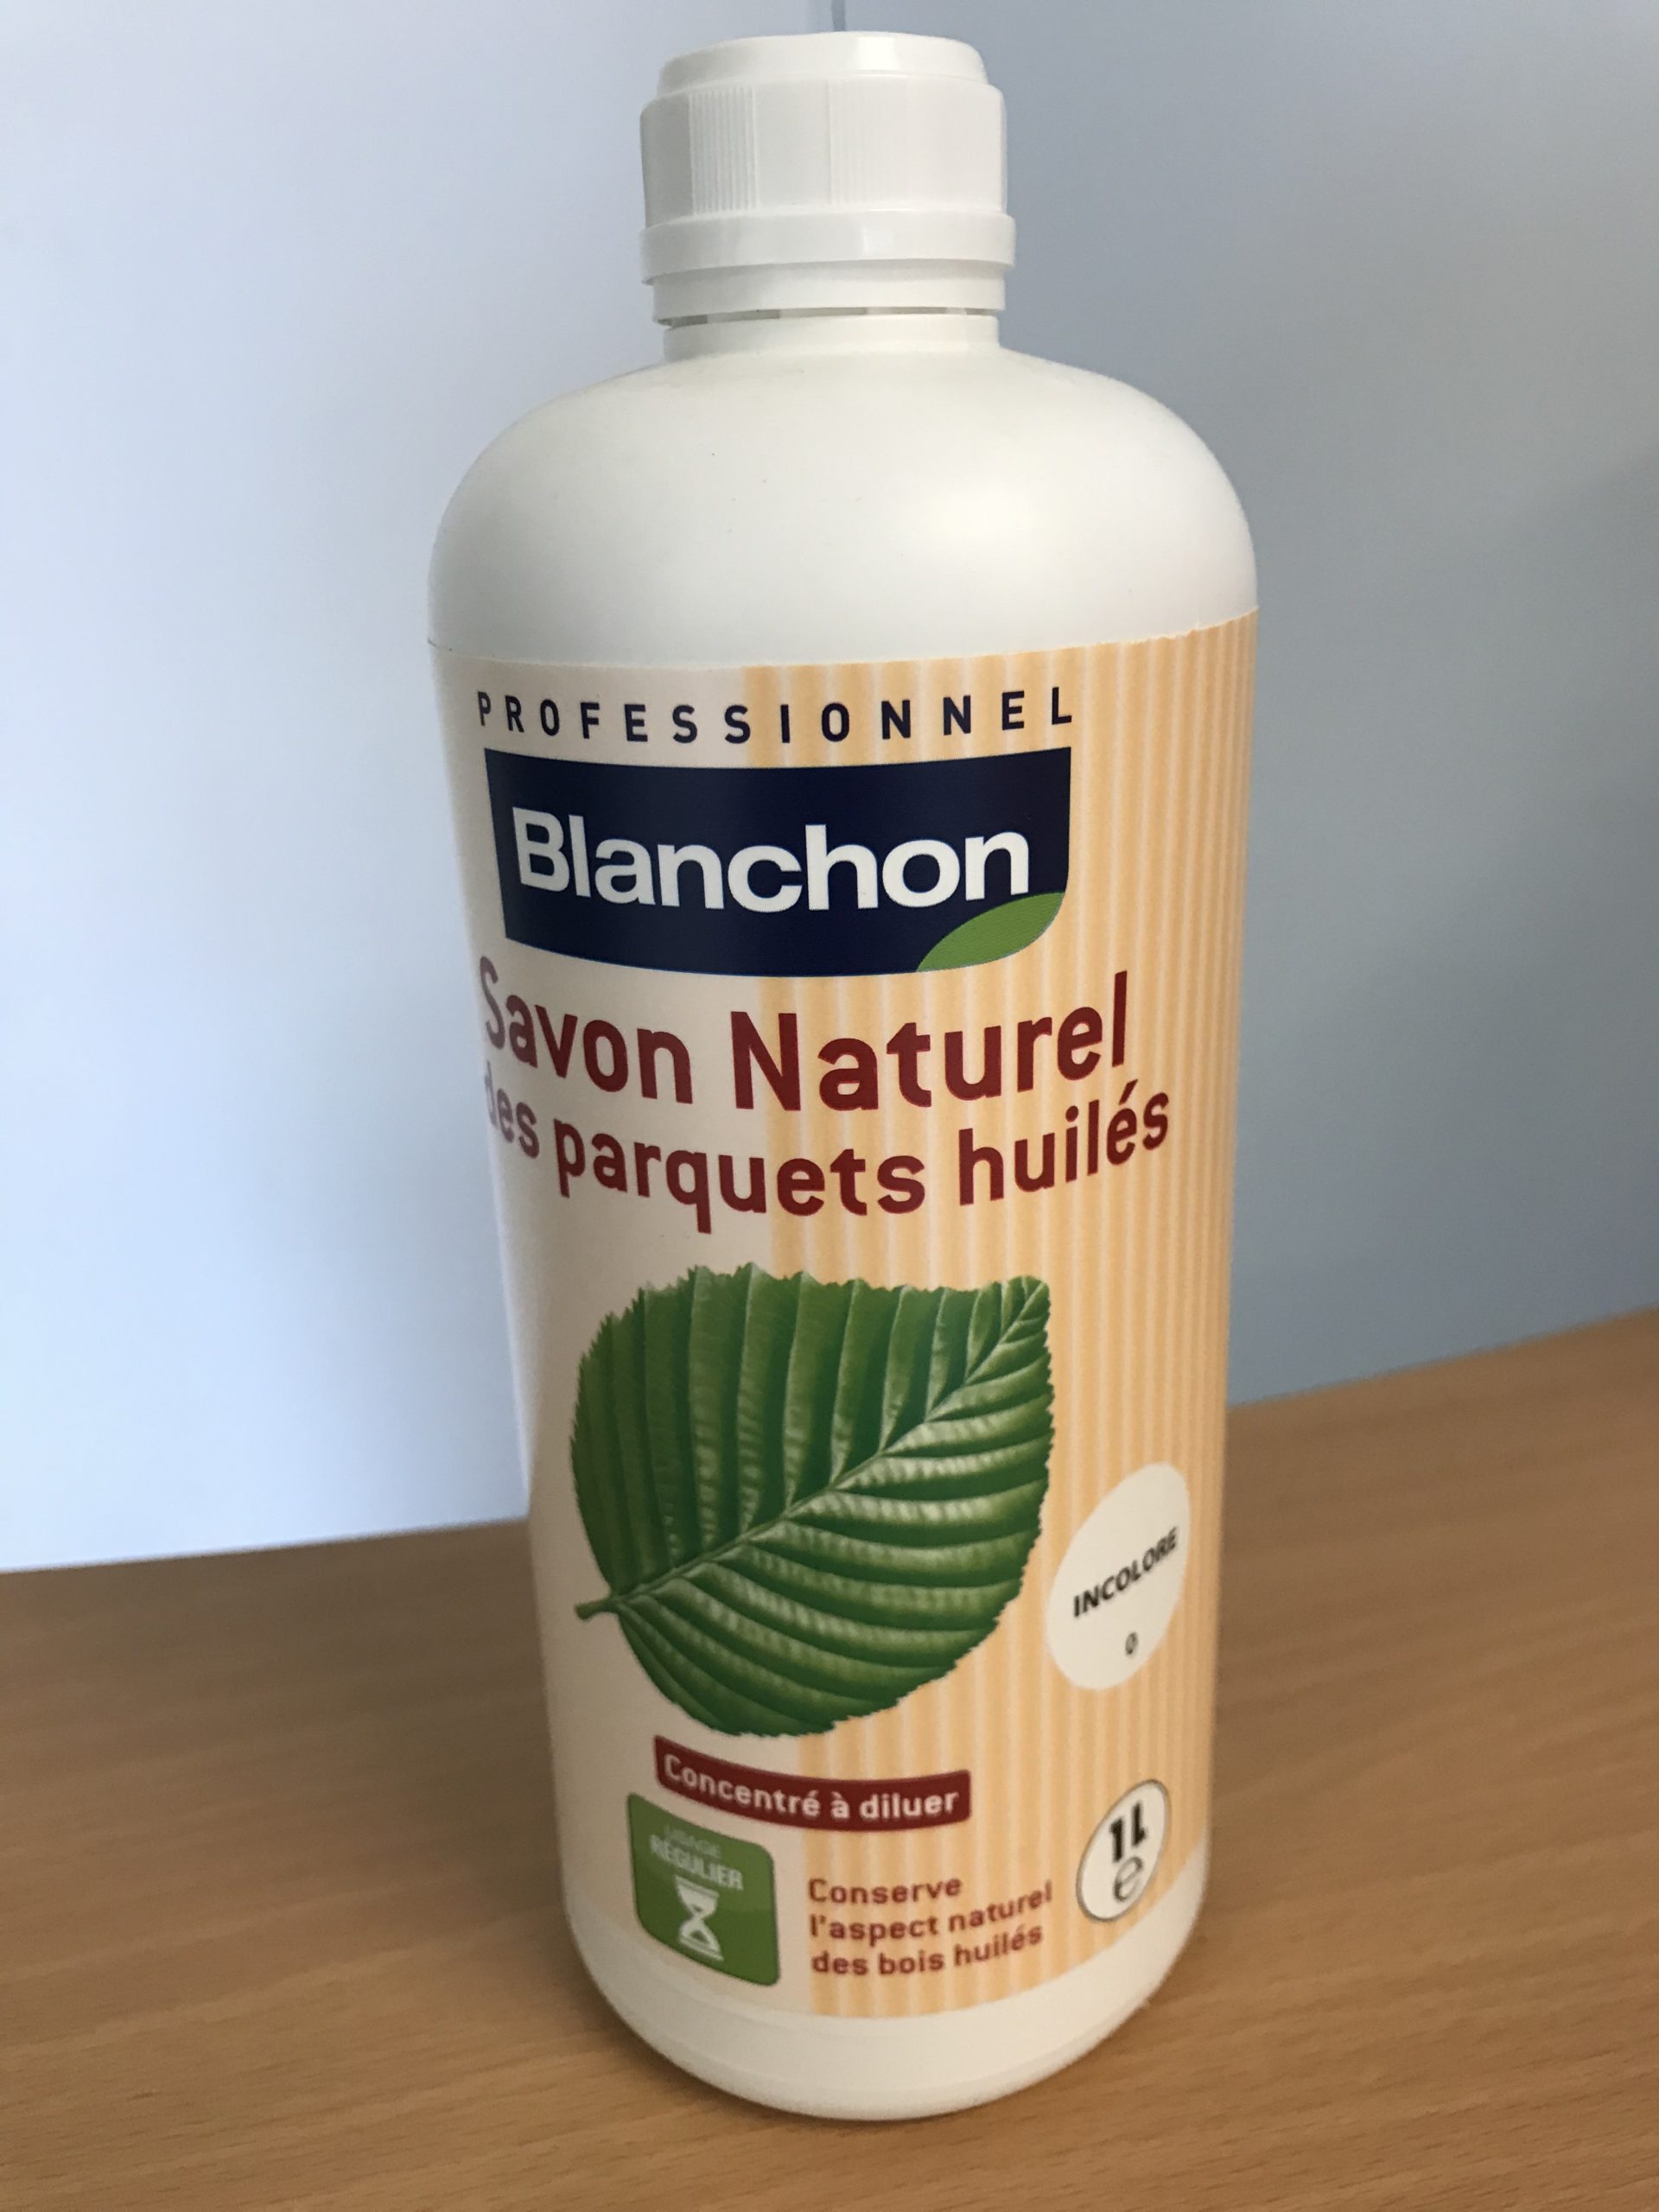 BLANCHON Savon naturel - Les parquets huilés